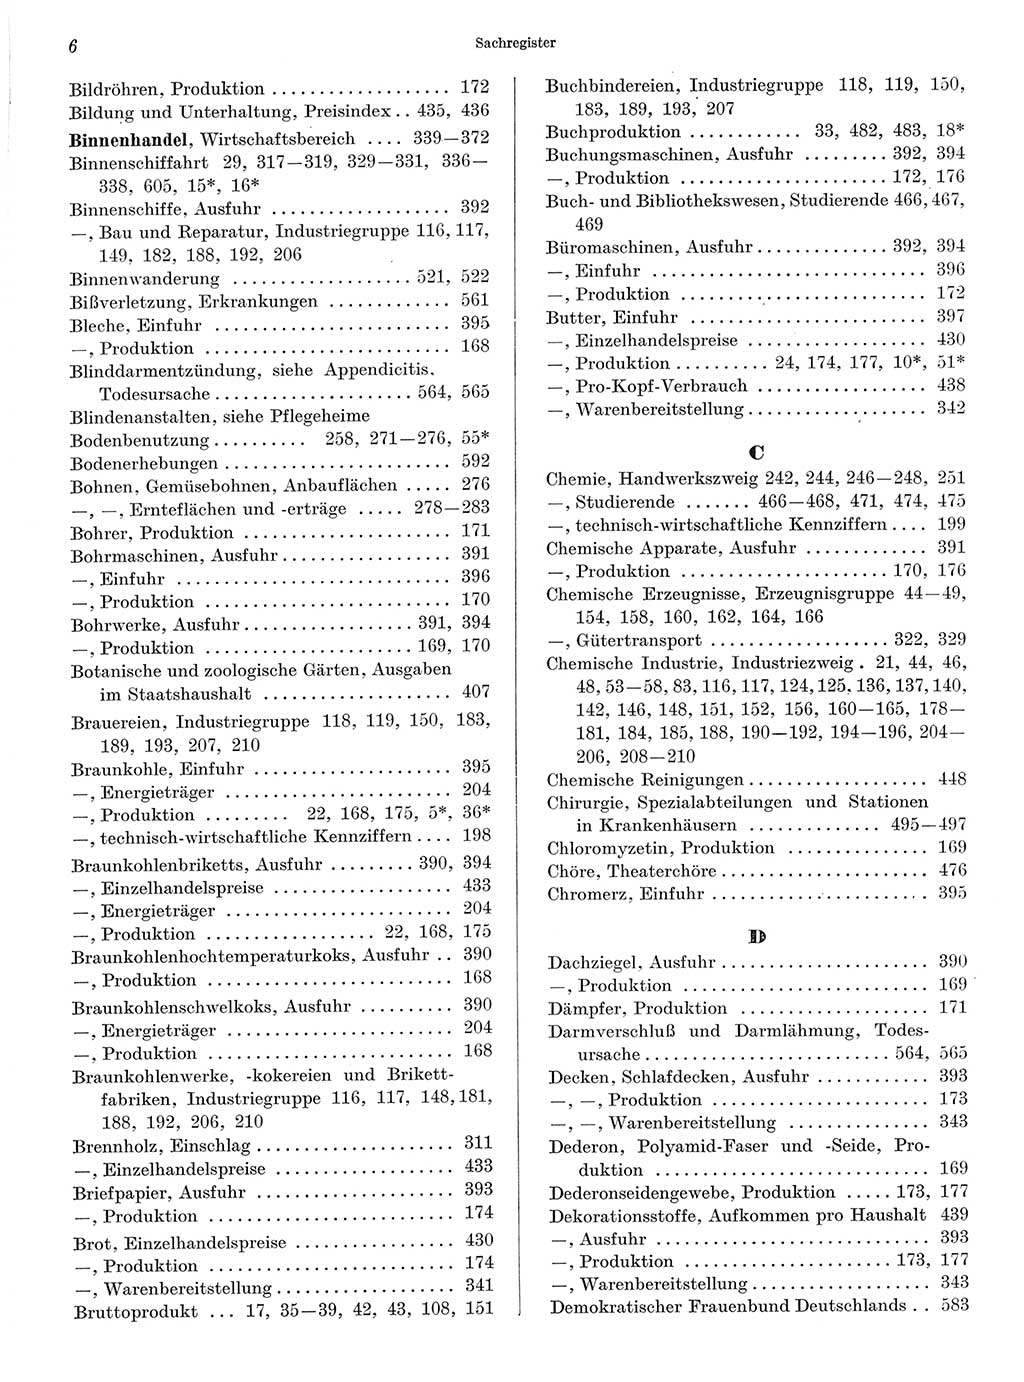 Statistisches Jahrbuch der Deutschen Demokratischen Republik (DDR) 1968, Seite 6 (Stat. Jb. DDR 1968, S. 6)